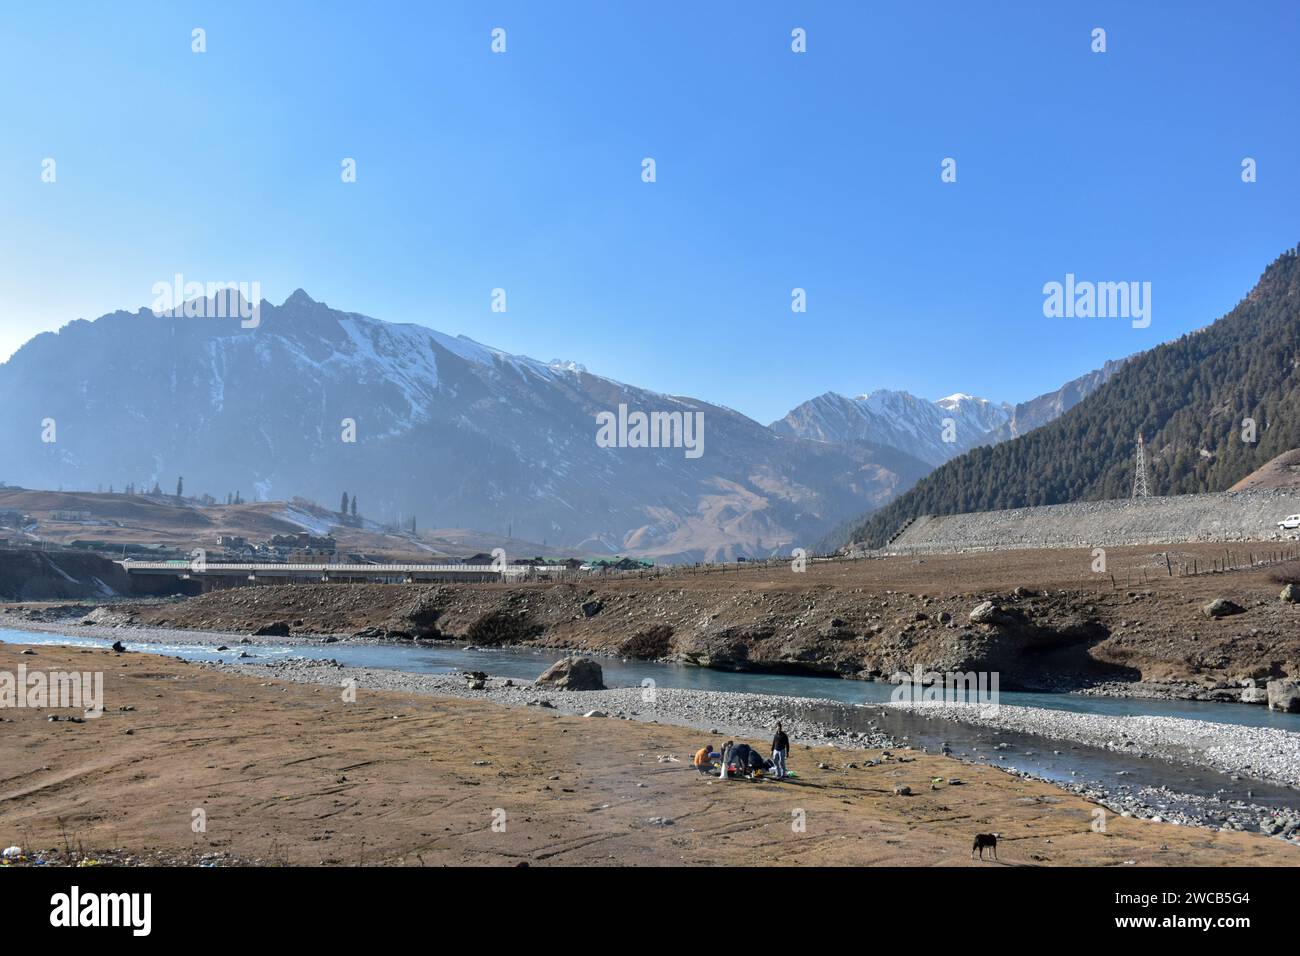 I visitatori si rilassano in un campo asciutto e senza neve durante una giornata invernale soleggiata nella stazione di Sonamarg Hill, a circa 100 km da Srinagar. Un lungo periodo di secchezza si sta diffondendo attraverso la valle del Kashmir durante la fase più dura dell'inverno. Località turistiche come Gulmarg, Pahalgam e Sonamarg avrebbero in genere accumulato un'ampia neve ormai. Ma quest'anno, la valle del Kashmir è asciutta, senza neve da nessuna parte. Mentre il settore turistico è stato colpito duramente, mentre i turisti, che avevano programmato di visitare la Valle a gennaio per godersi la neve, stanno cancellando i loro viaggi. Foto Stock